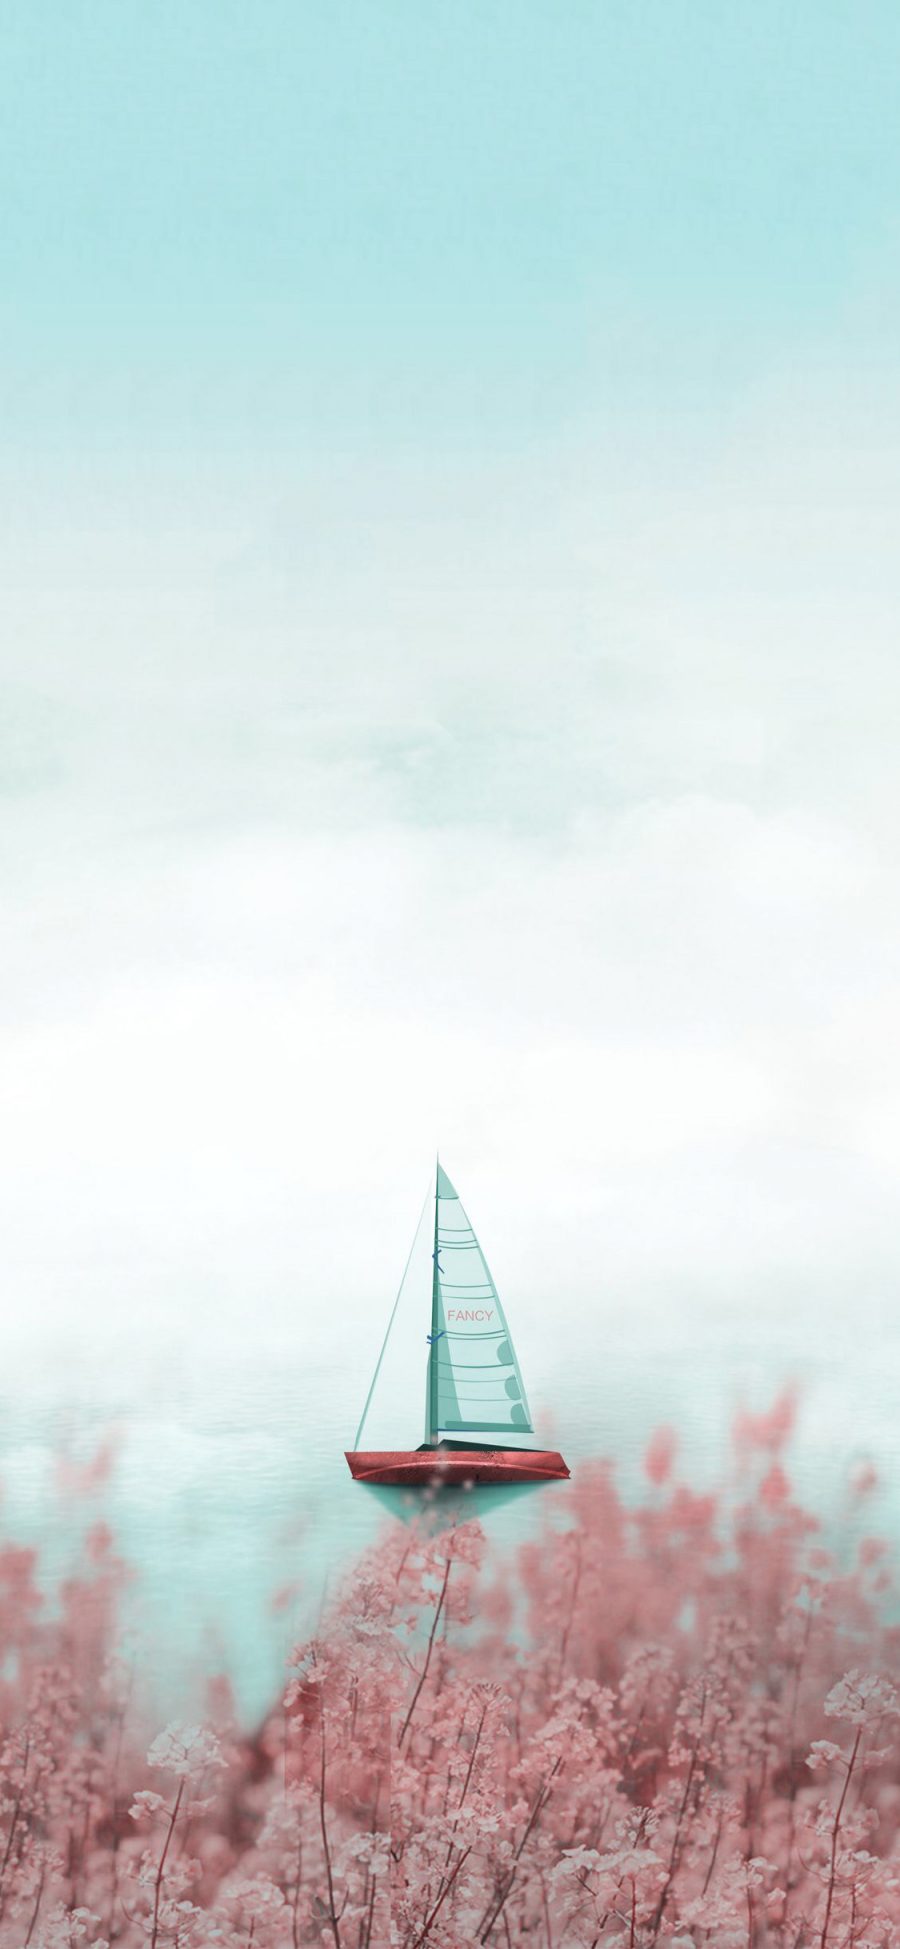 [2436×1125]帆船 大海 渐变 鲜花 浪漫 苹果手机壁纸图片